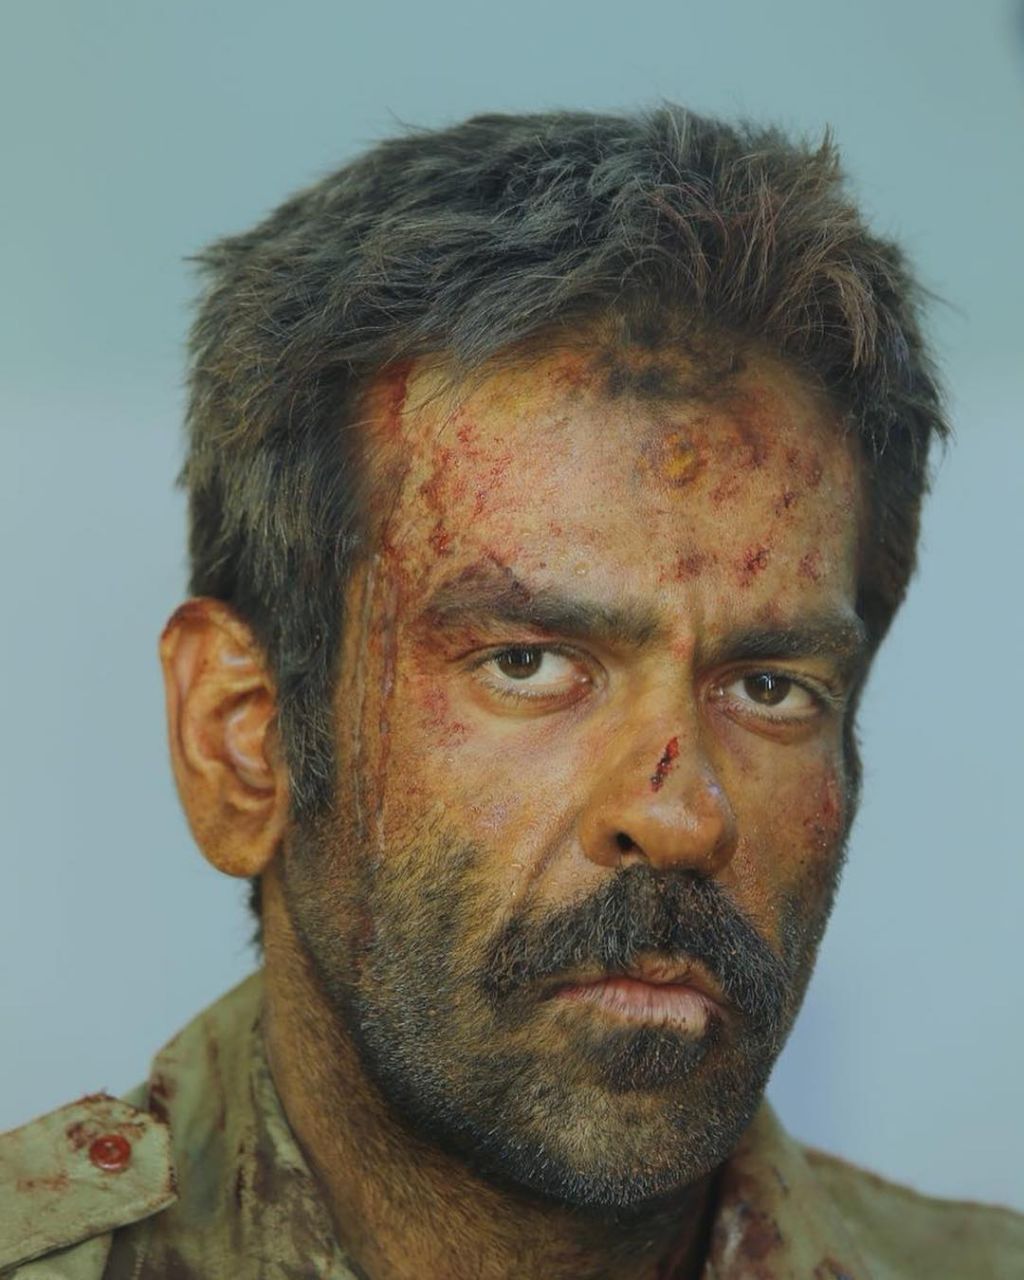 بانیپال شومون در فیلم تنگه ابوقریب